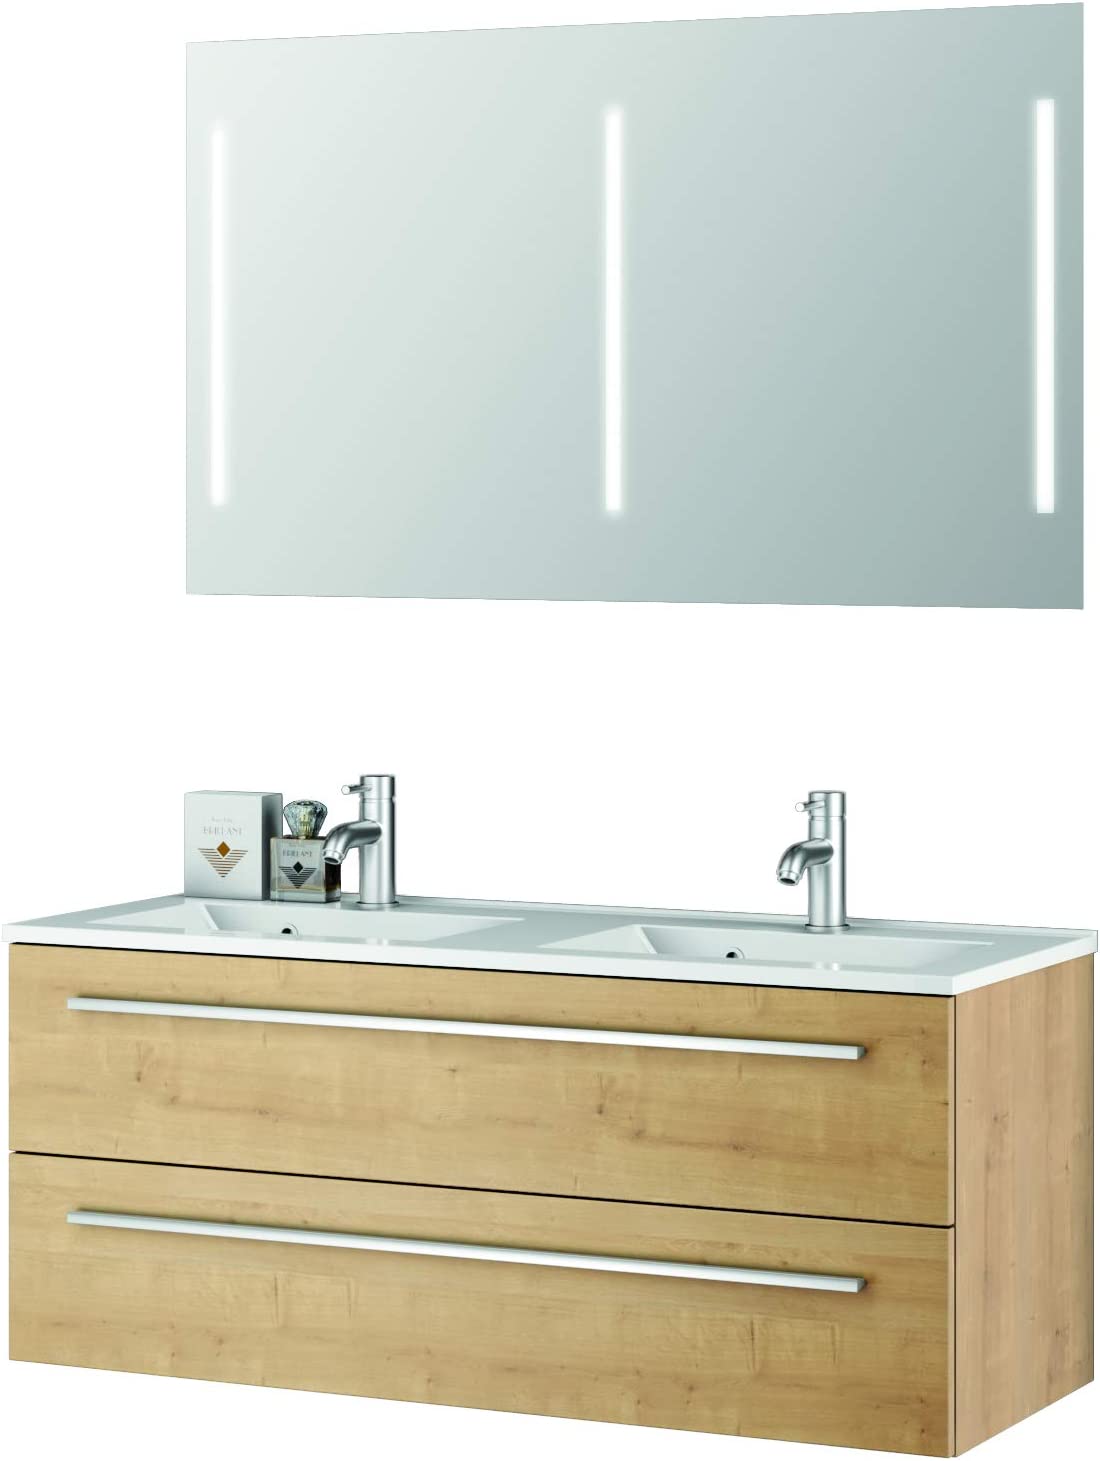 Modernes Bad Doppelwaschtisch Unterschrank 120 x 50 cm Spiegel mit Beleuchtung, Badmöbel Set Eiche Natur Holz Badezimmer Kombination Qualität